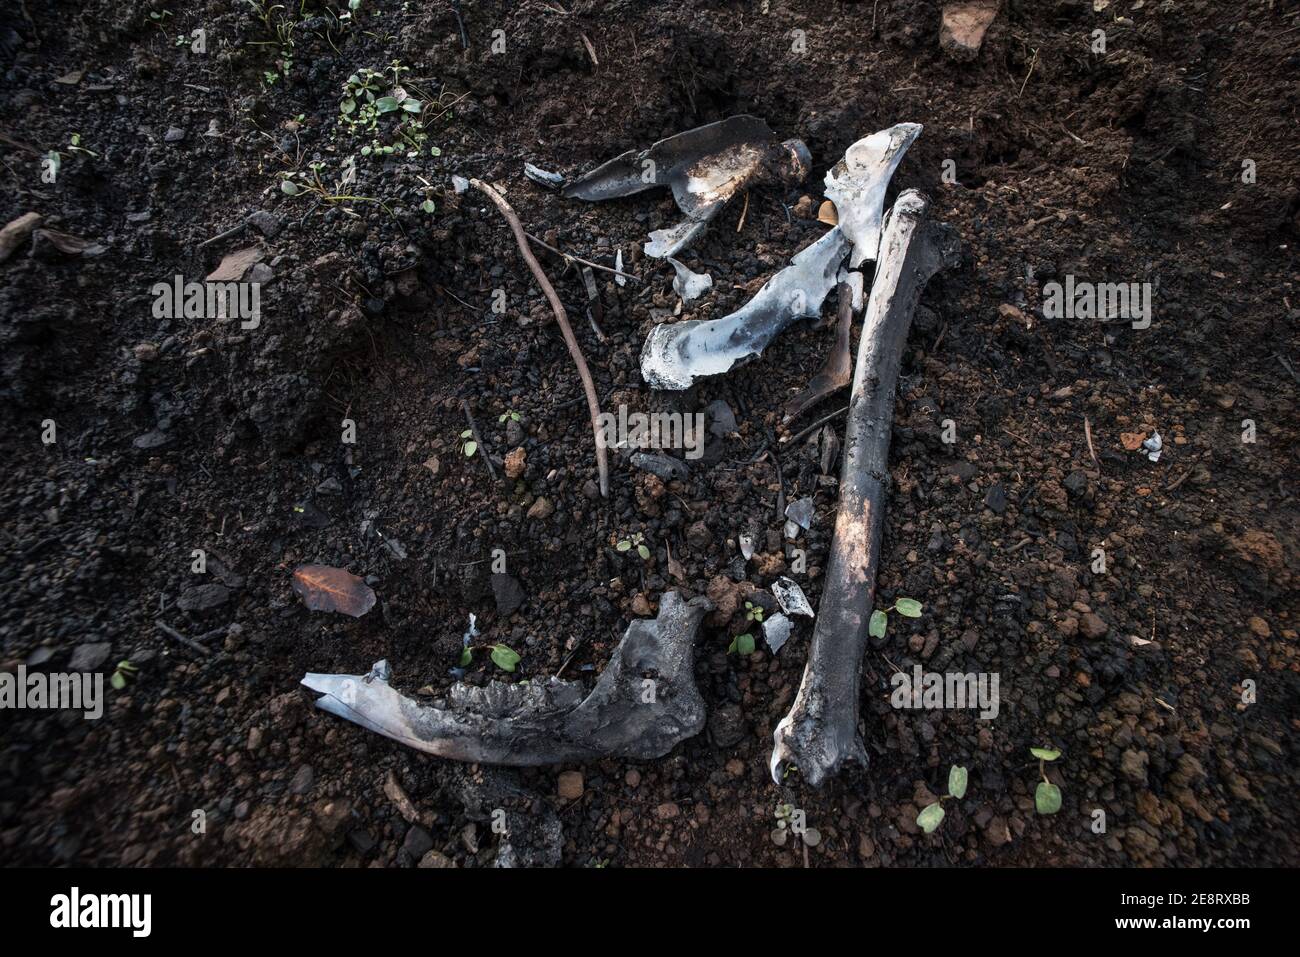 Verkohlte Knochen sind alles, was von einem Maultier Reh, der in den kalifornischen Waldbränden gefangen bekommen haben muss, bleibt. Stockfoto